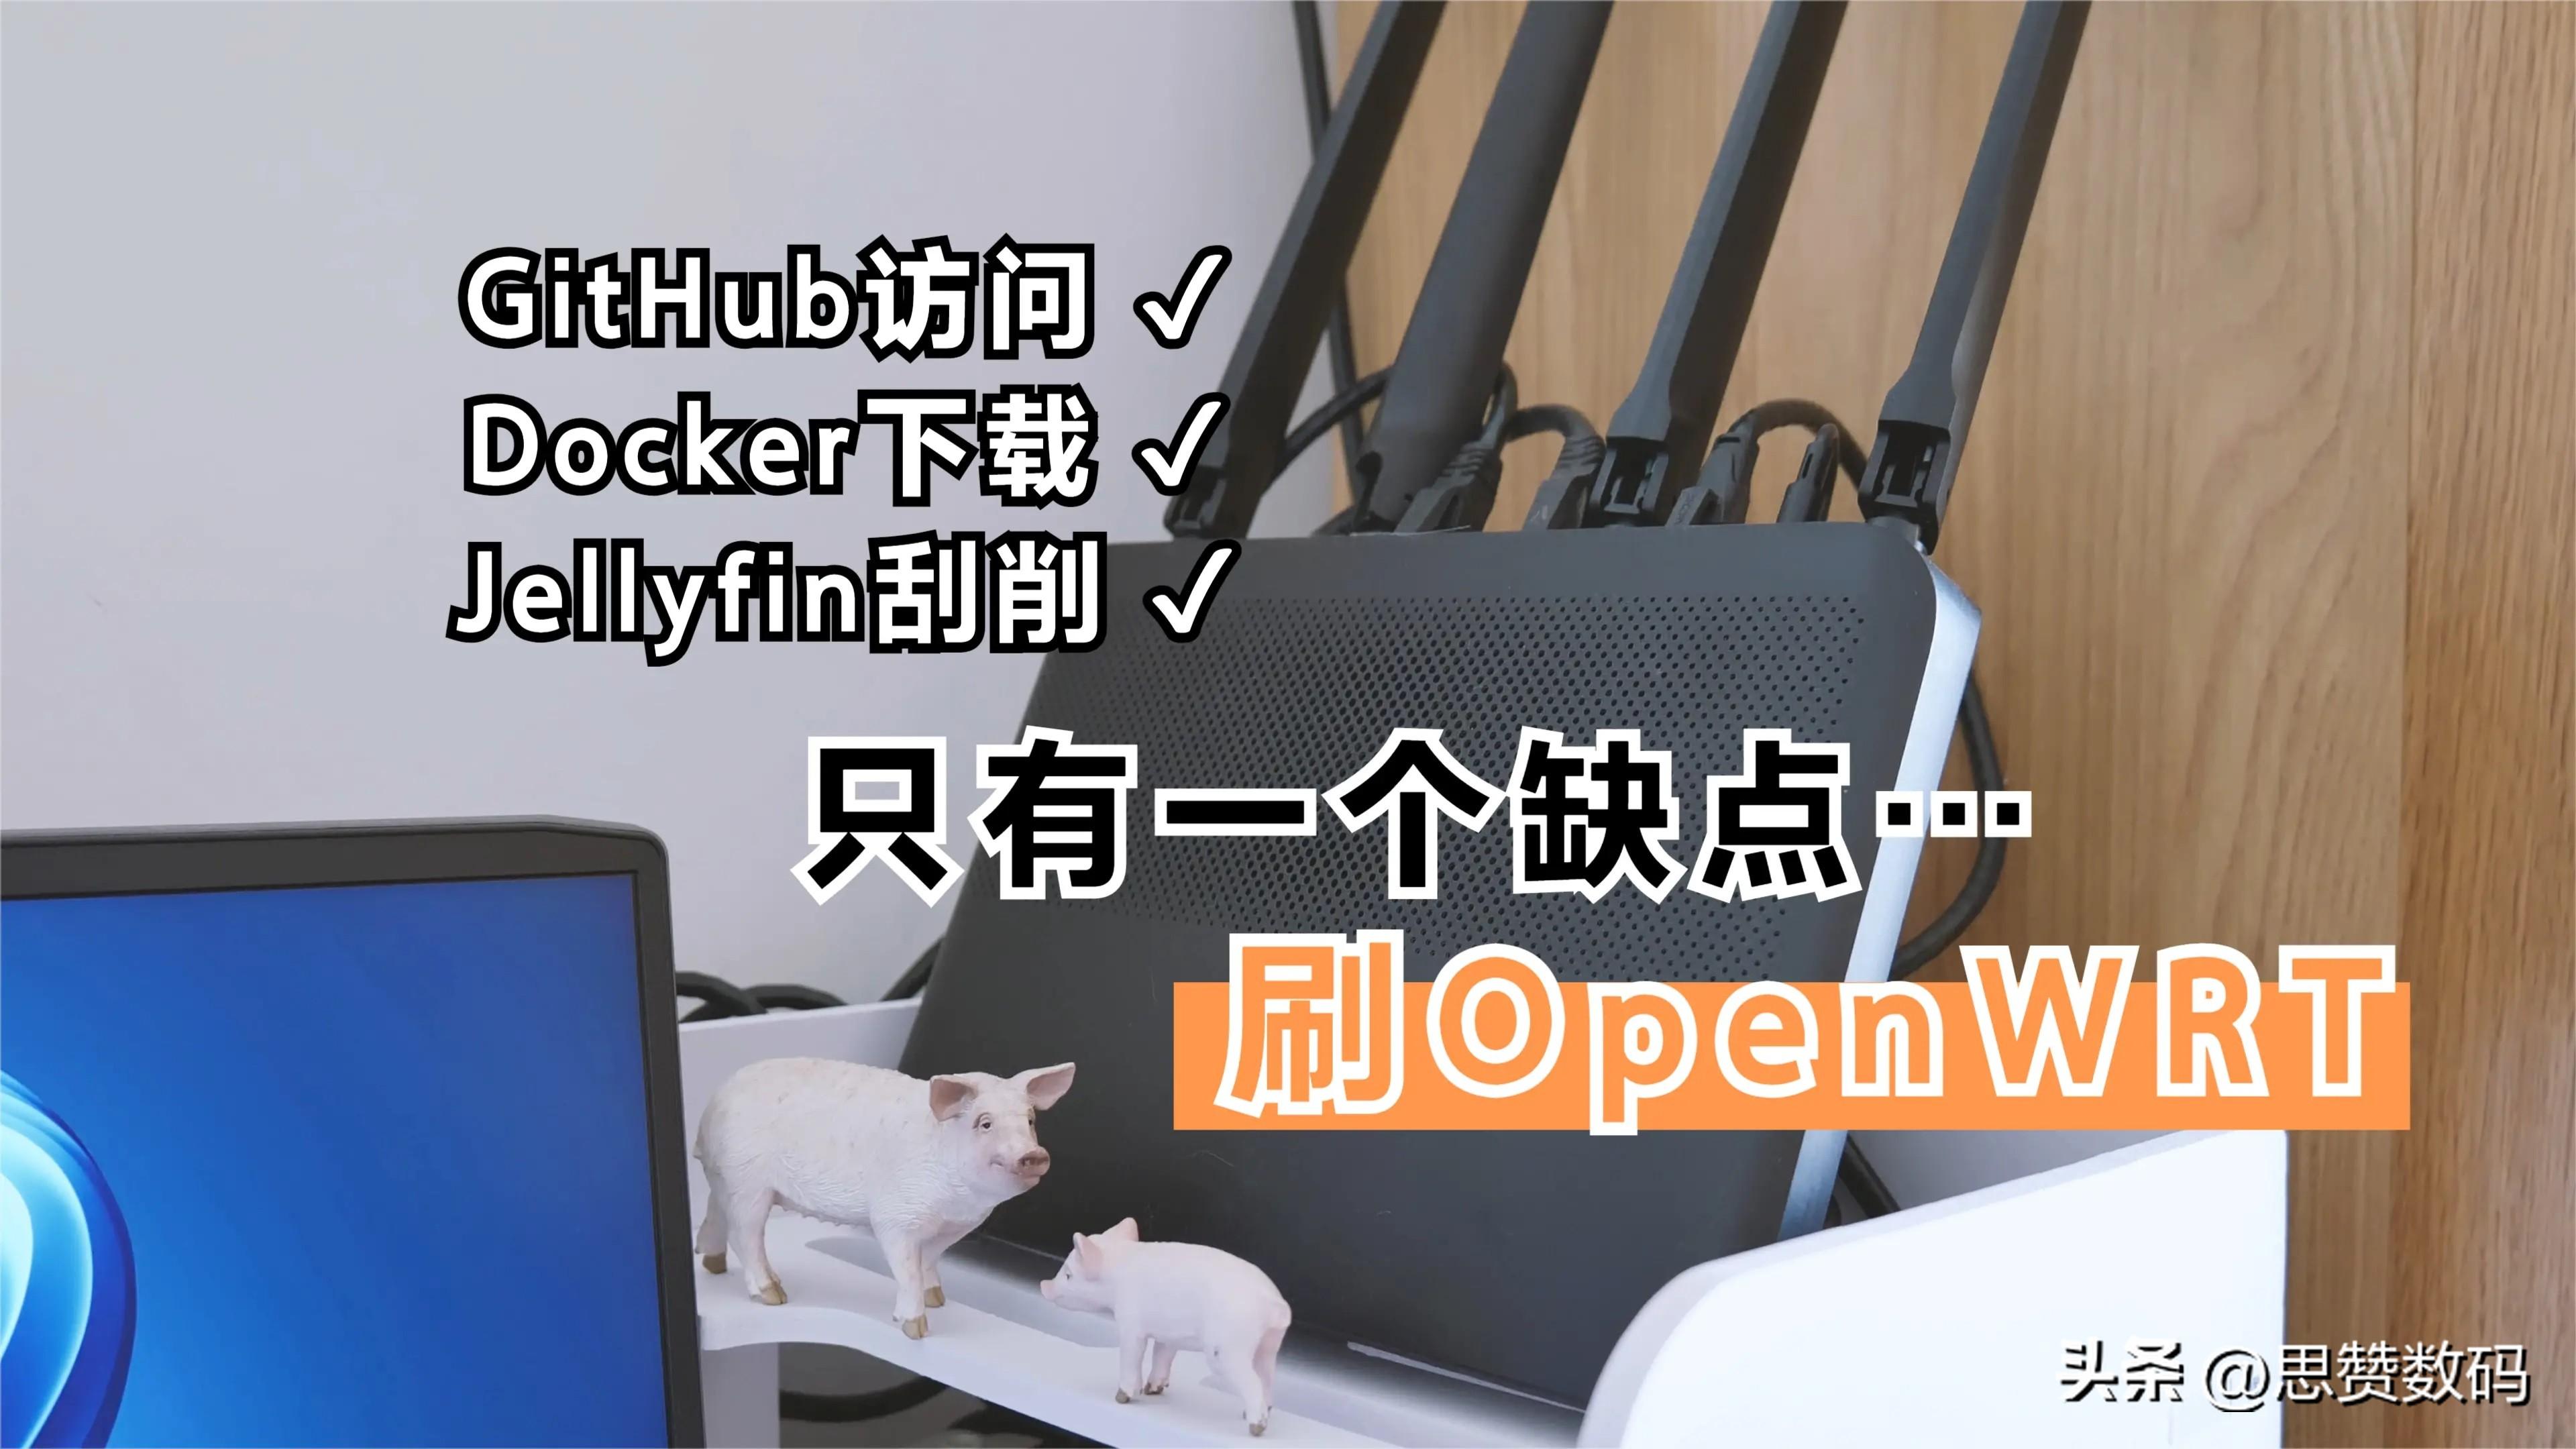 路由器刷openwrt教程(OpenWRT解决docker无法连接 影视搜刮等问题)